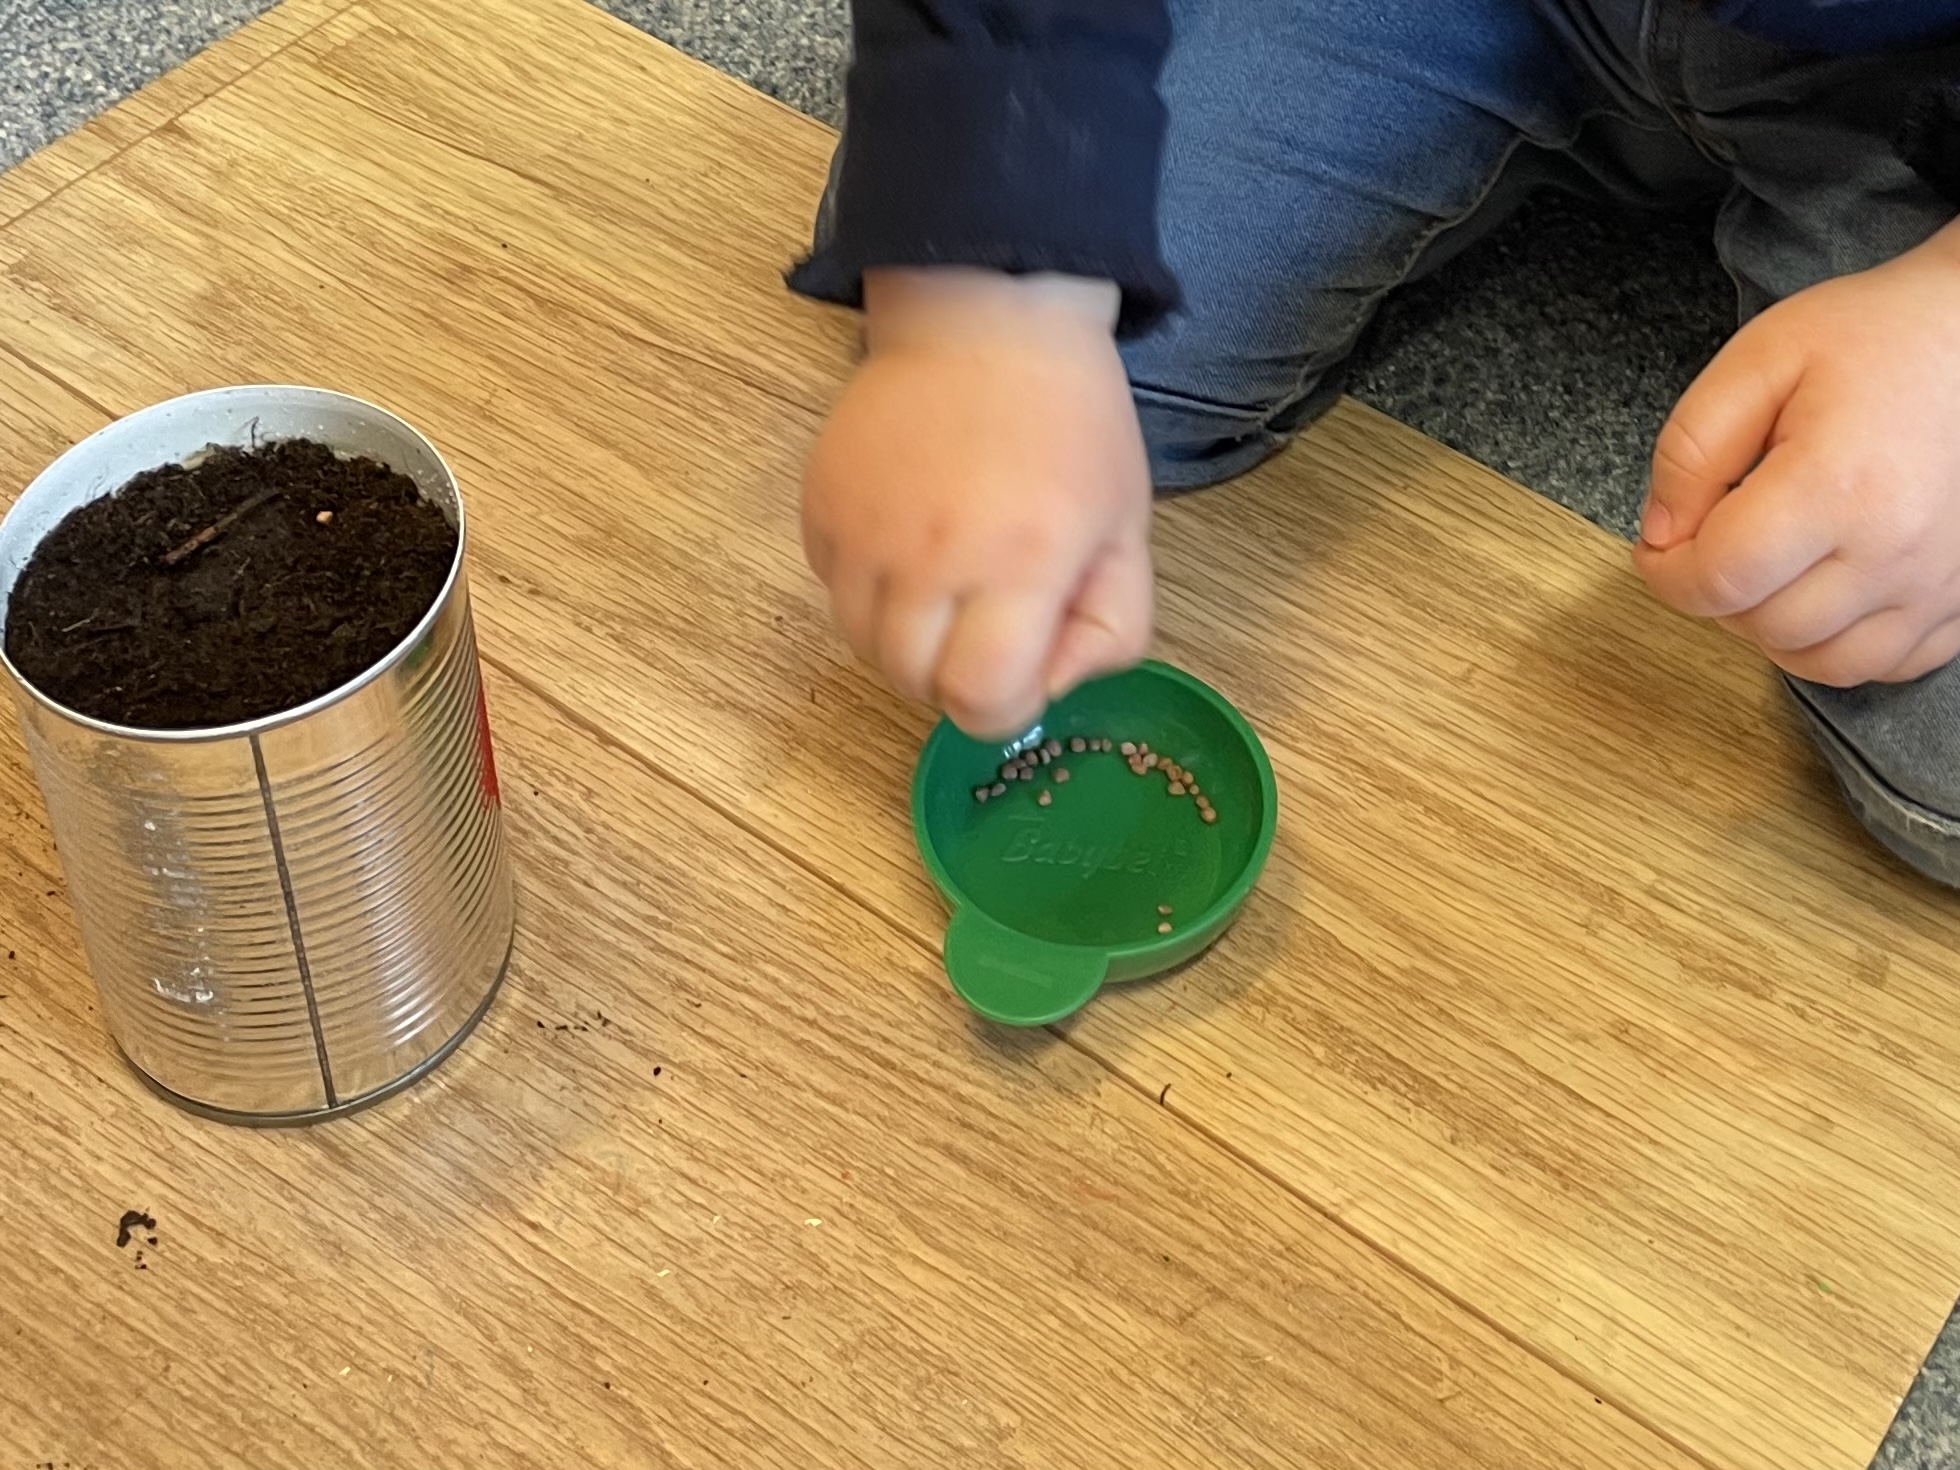 Bild zum Schritt 26 für das Bastel- und DIY-Abenteuer für Kinder: 'Jetzt wird angesät. Nehmt dazu die Radieschen- Samen und legt...'